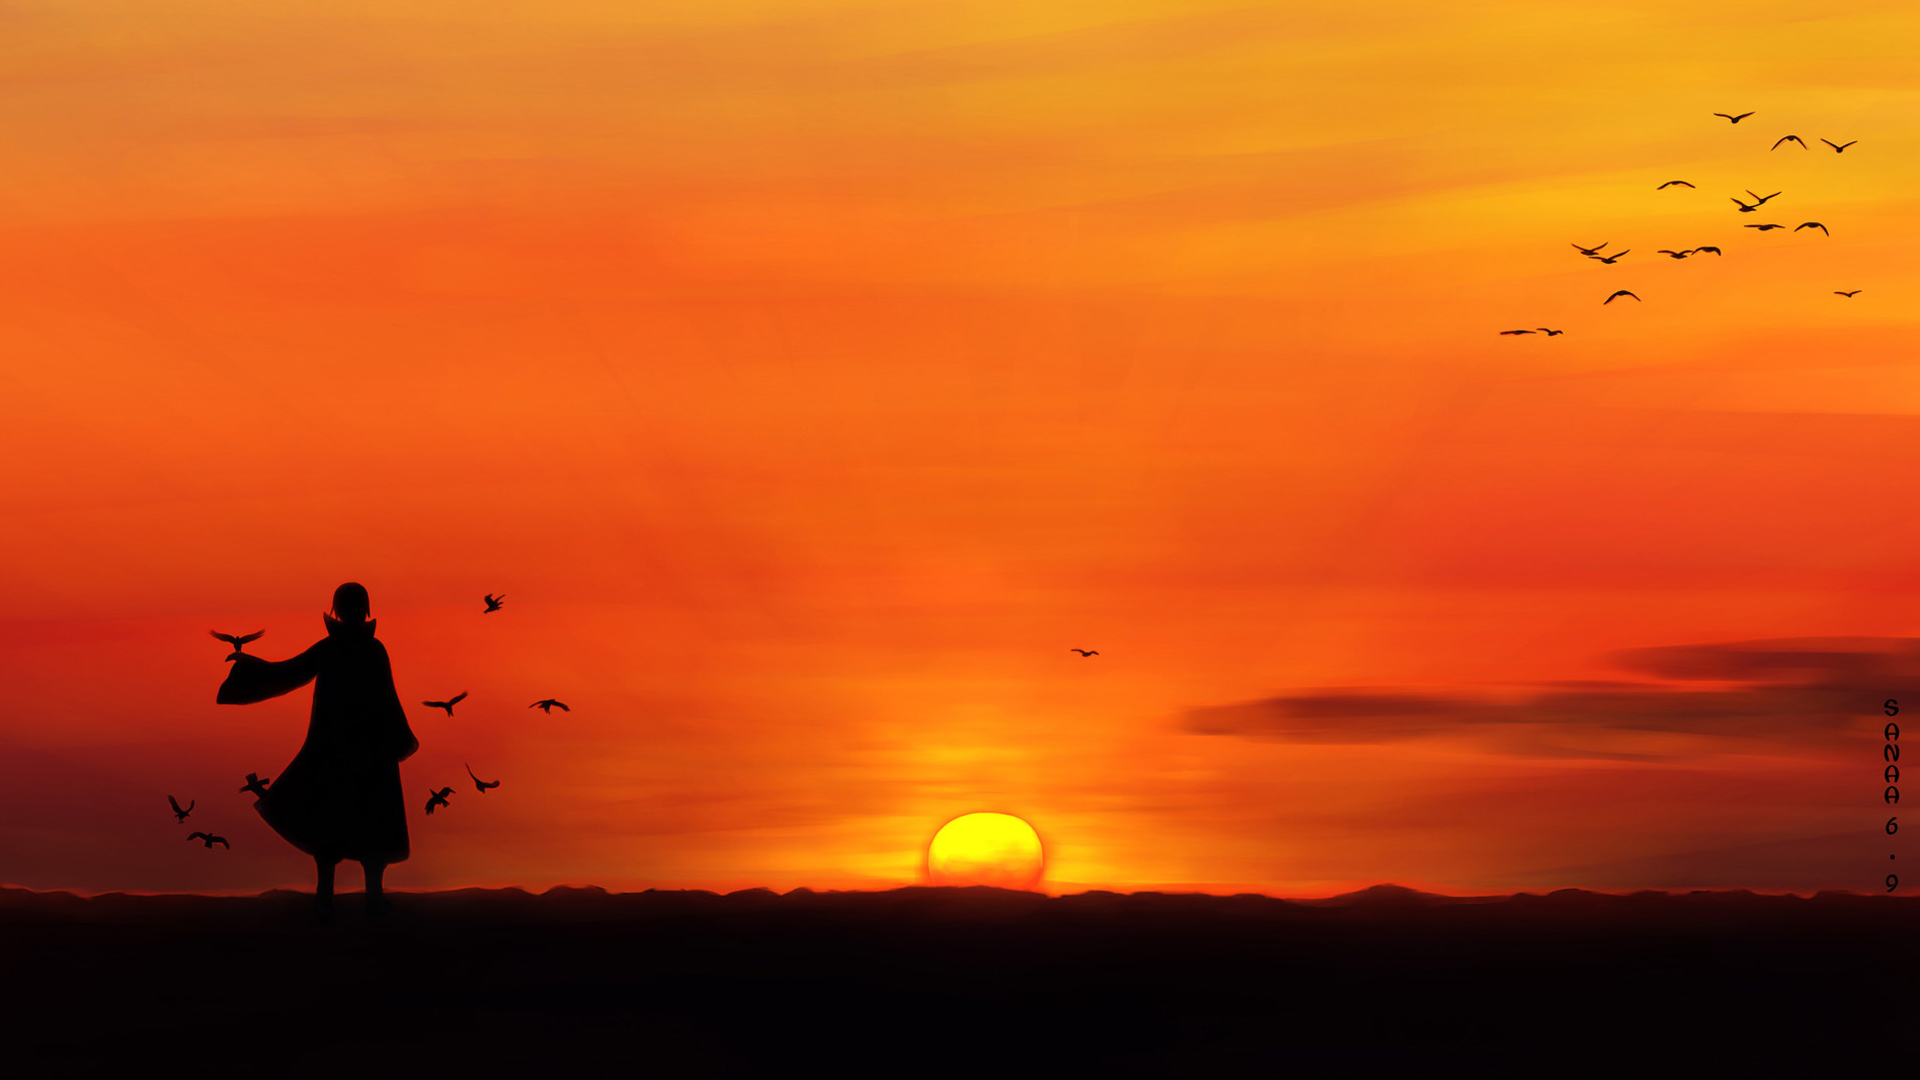 Itachi Uchiha Sunset Scenery HD Wallpaper Full Resolution